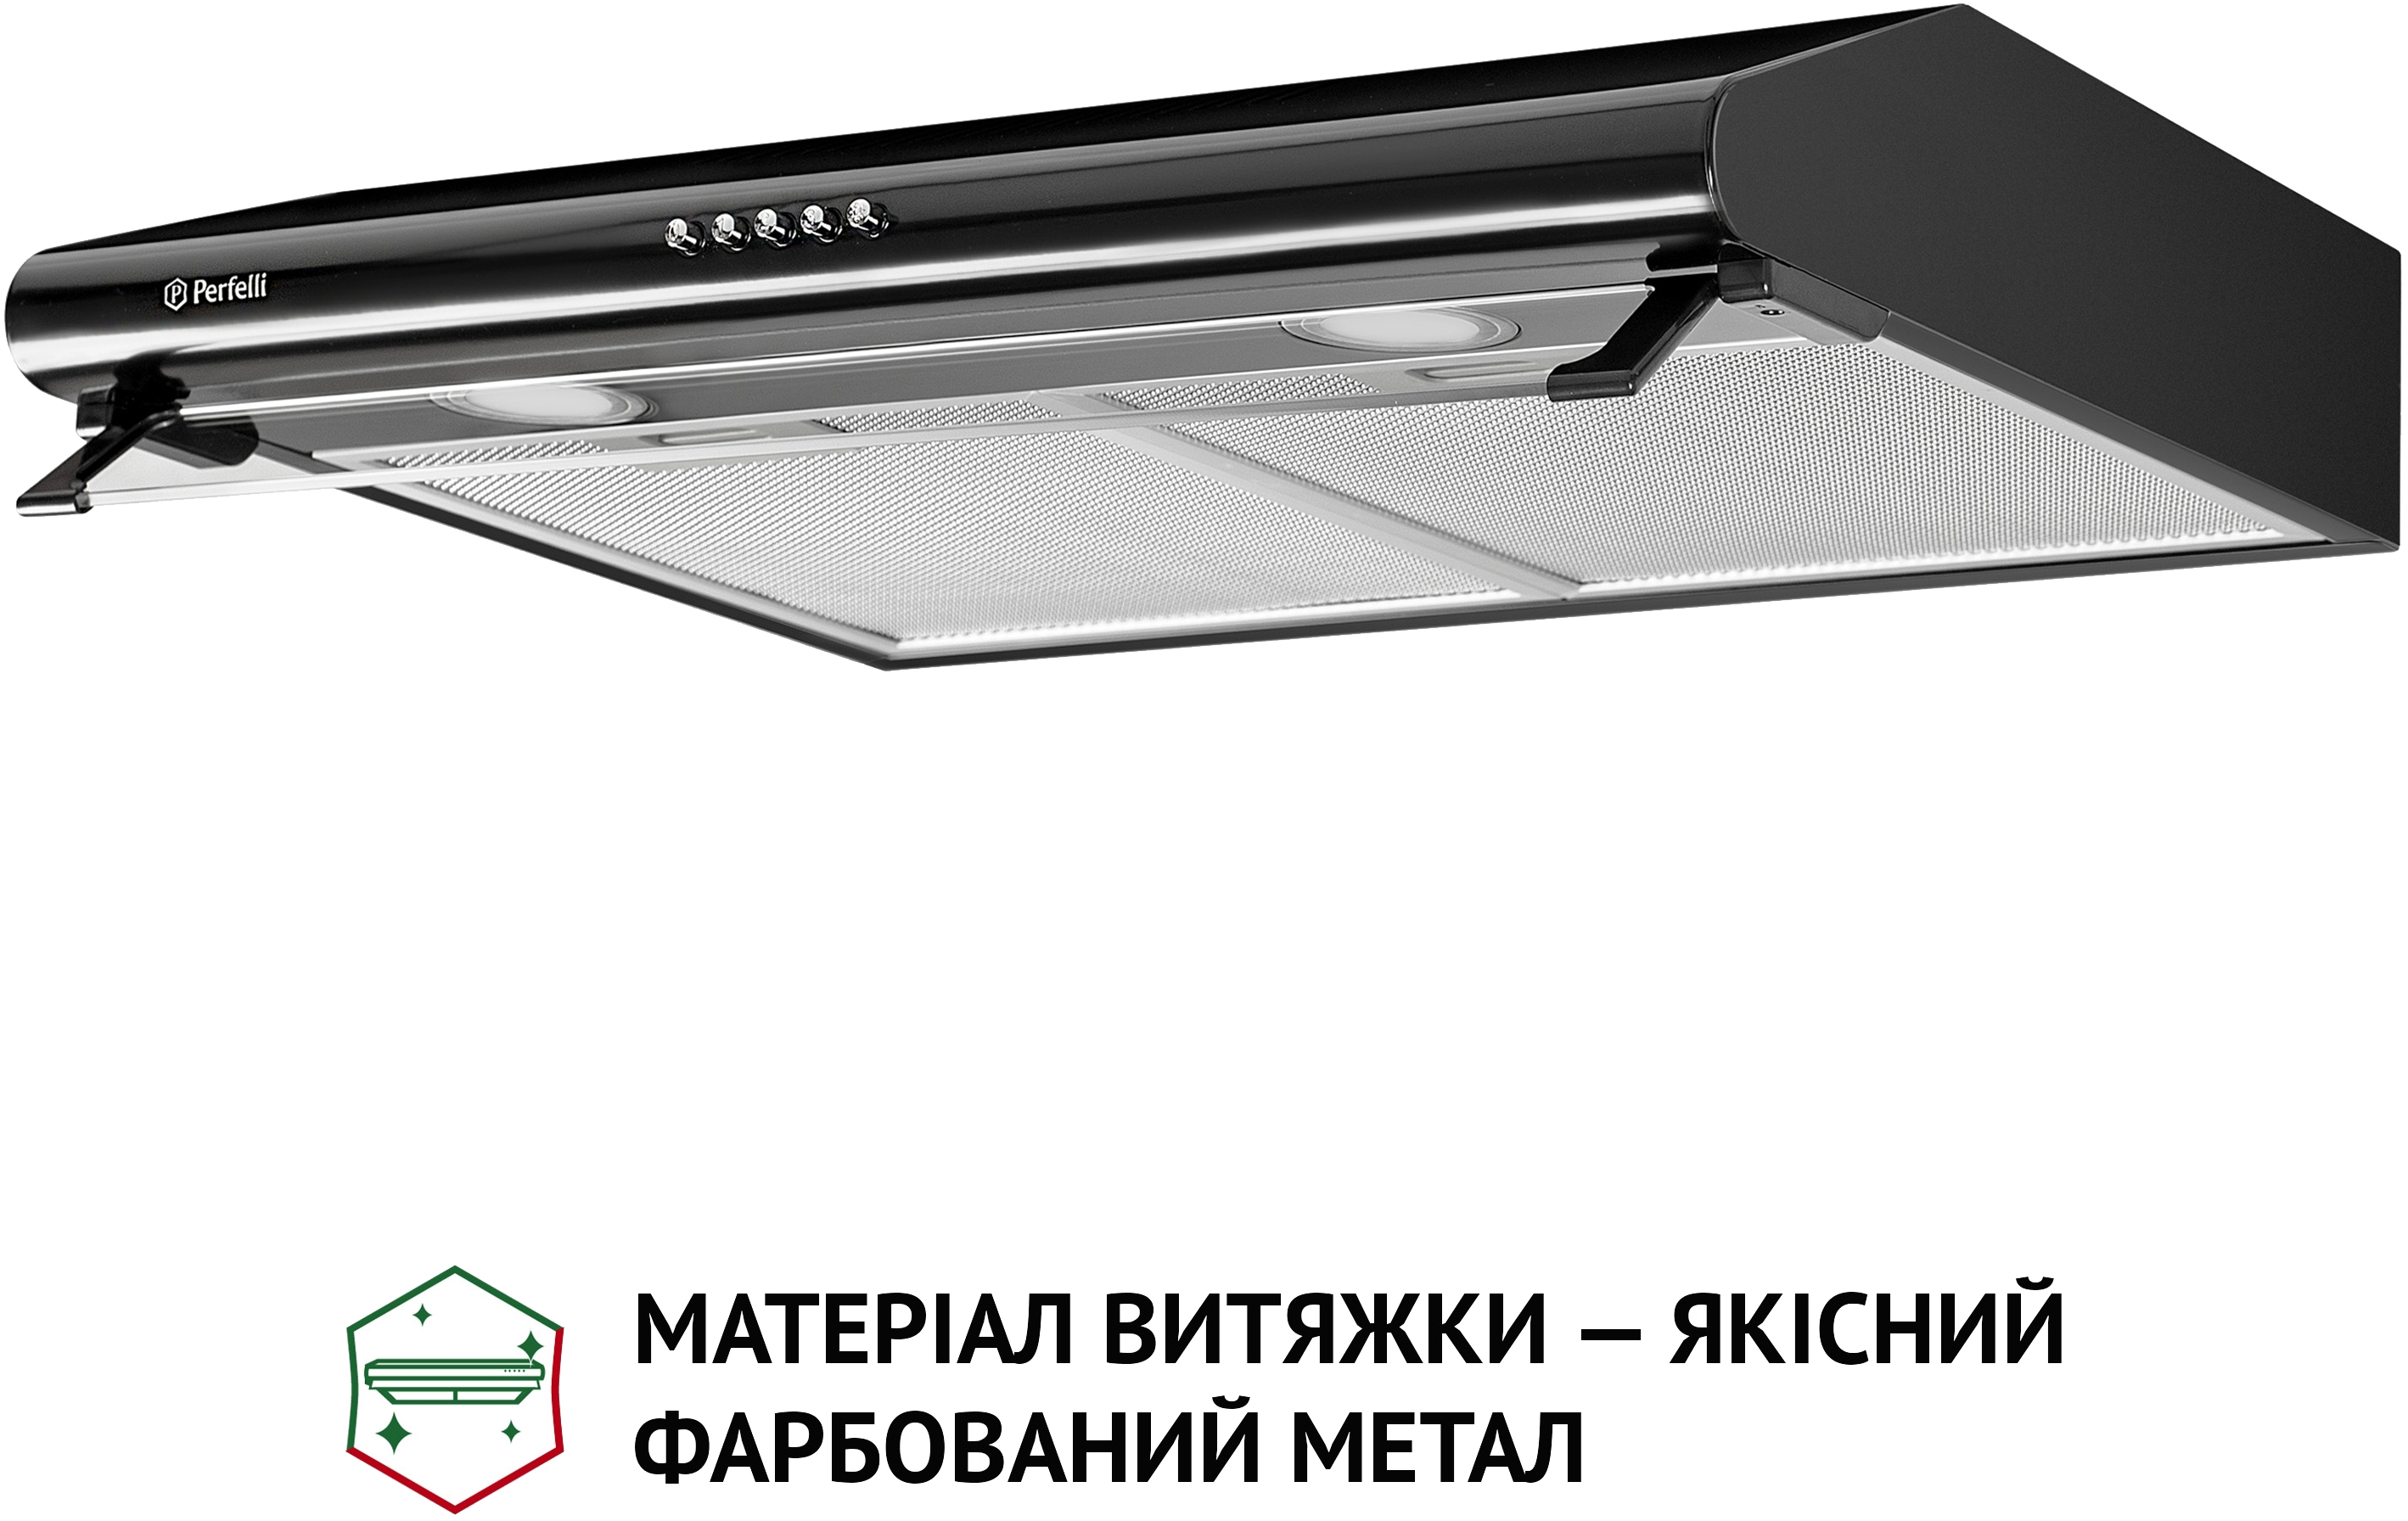 продаём Perfelli PL 6042 BL LED в Украине - фото 4